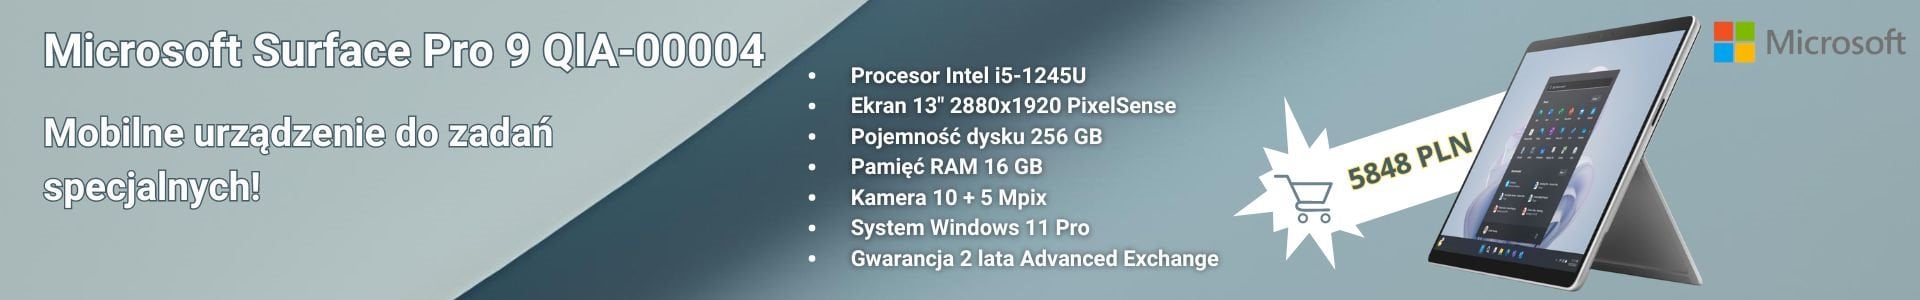 Microsoft Surface Pro 9 QIA-00004 w cenie 5848 zł brutto!